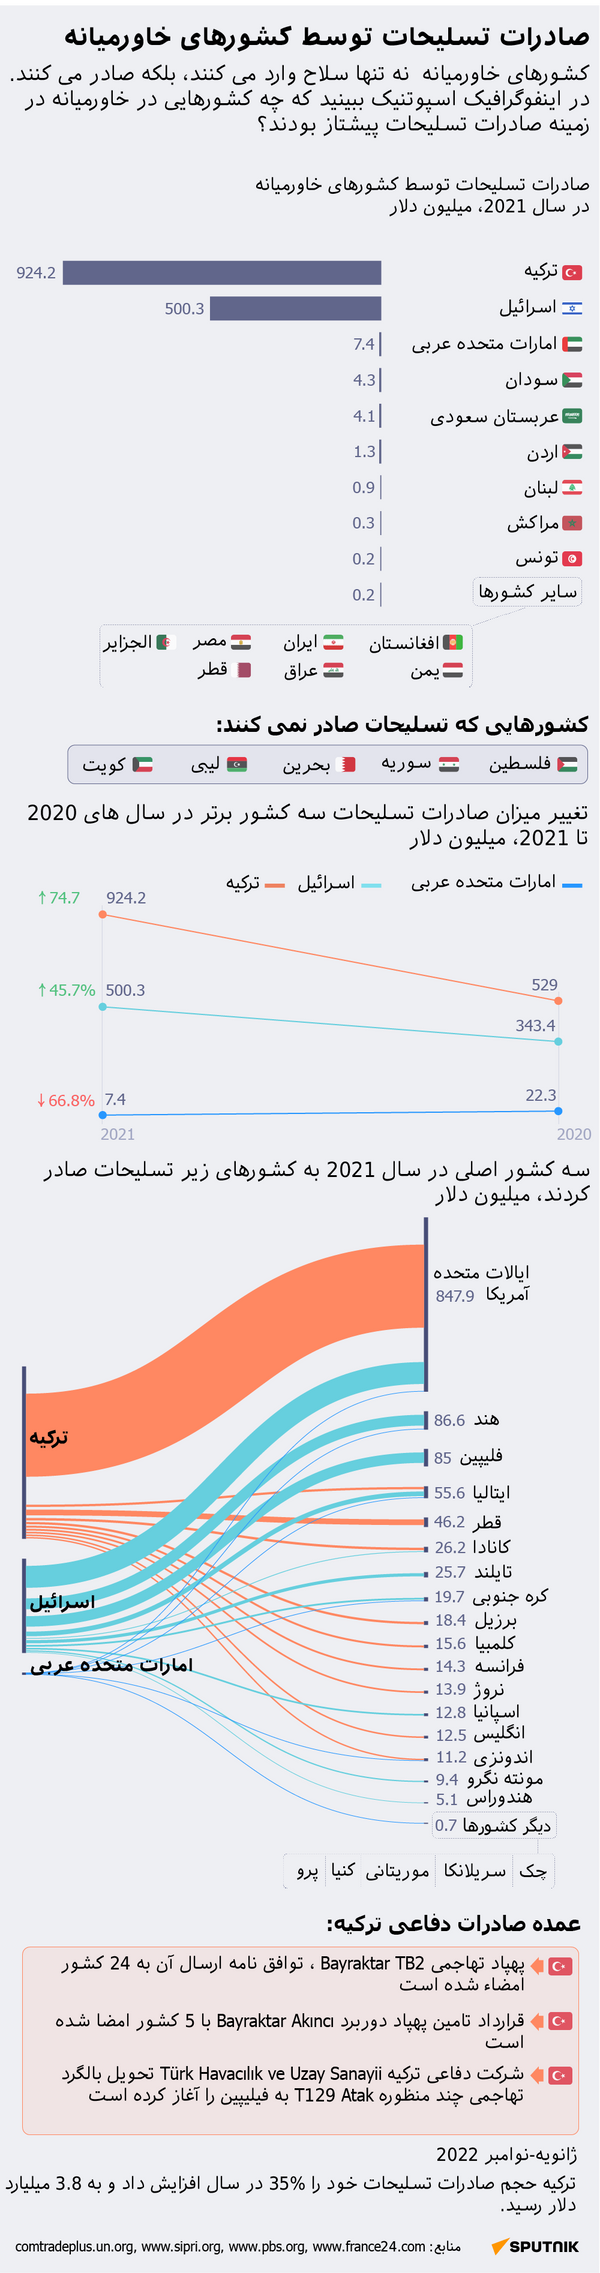 صادرات تسلیحات توسط کشور های خاورمیانه - اسپوتنیک افغانستان  